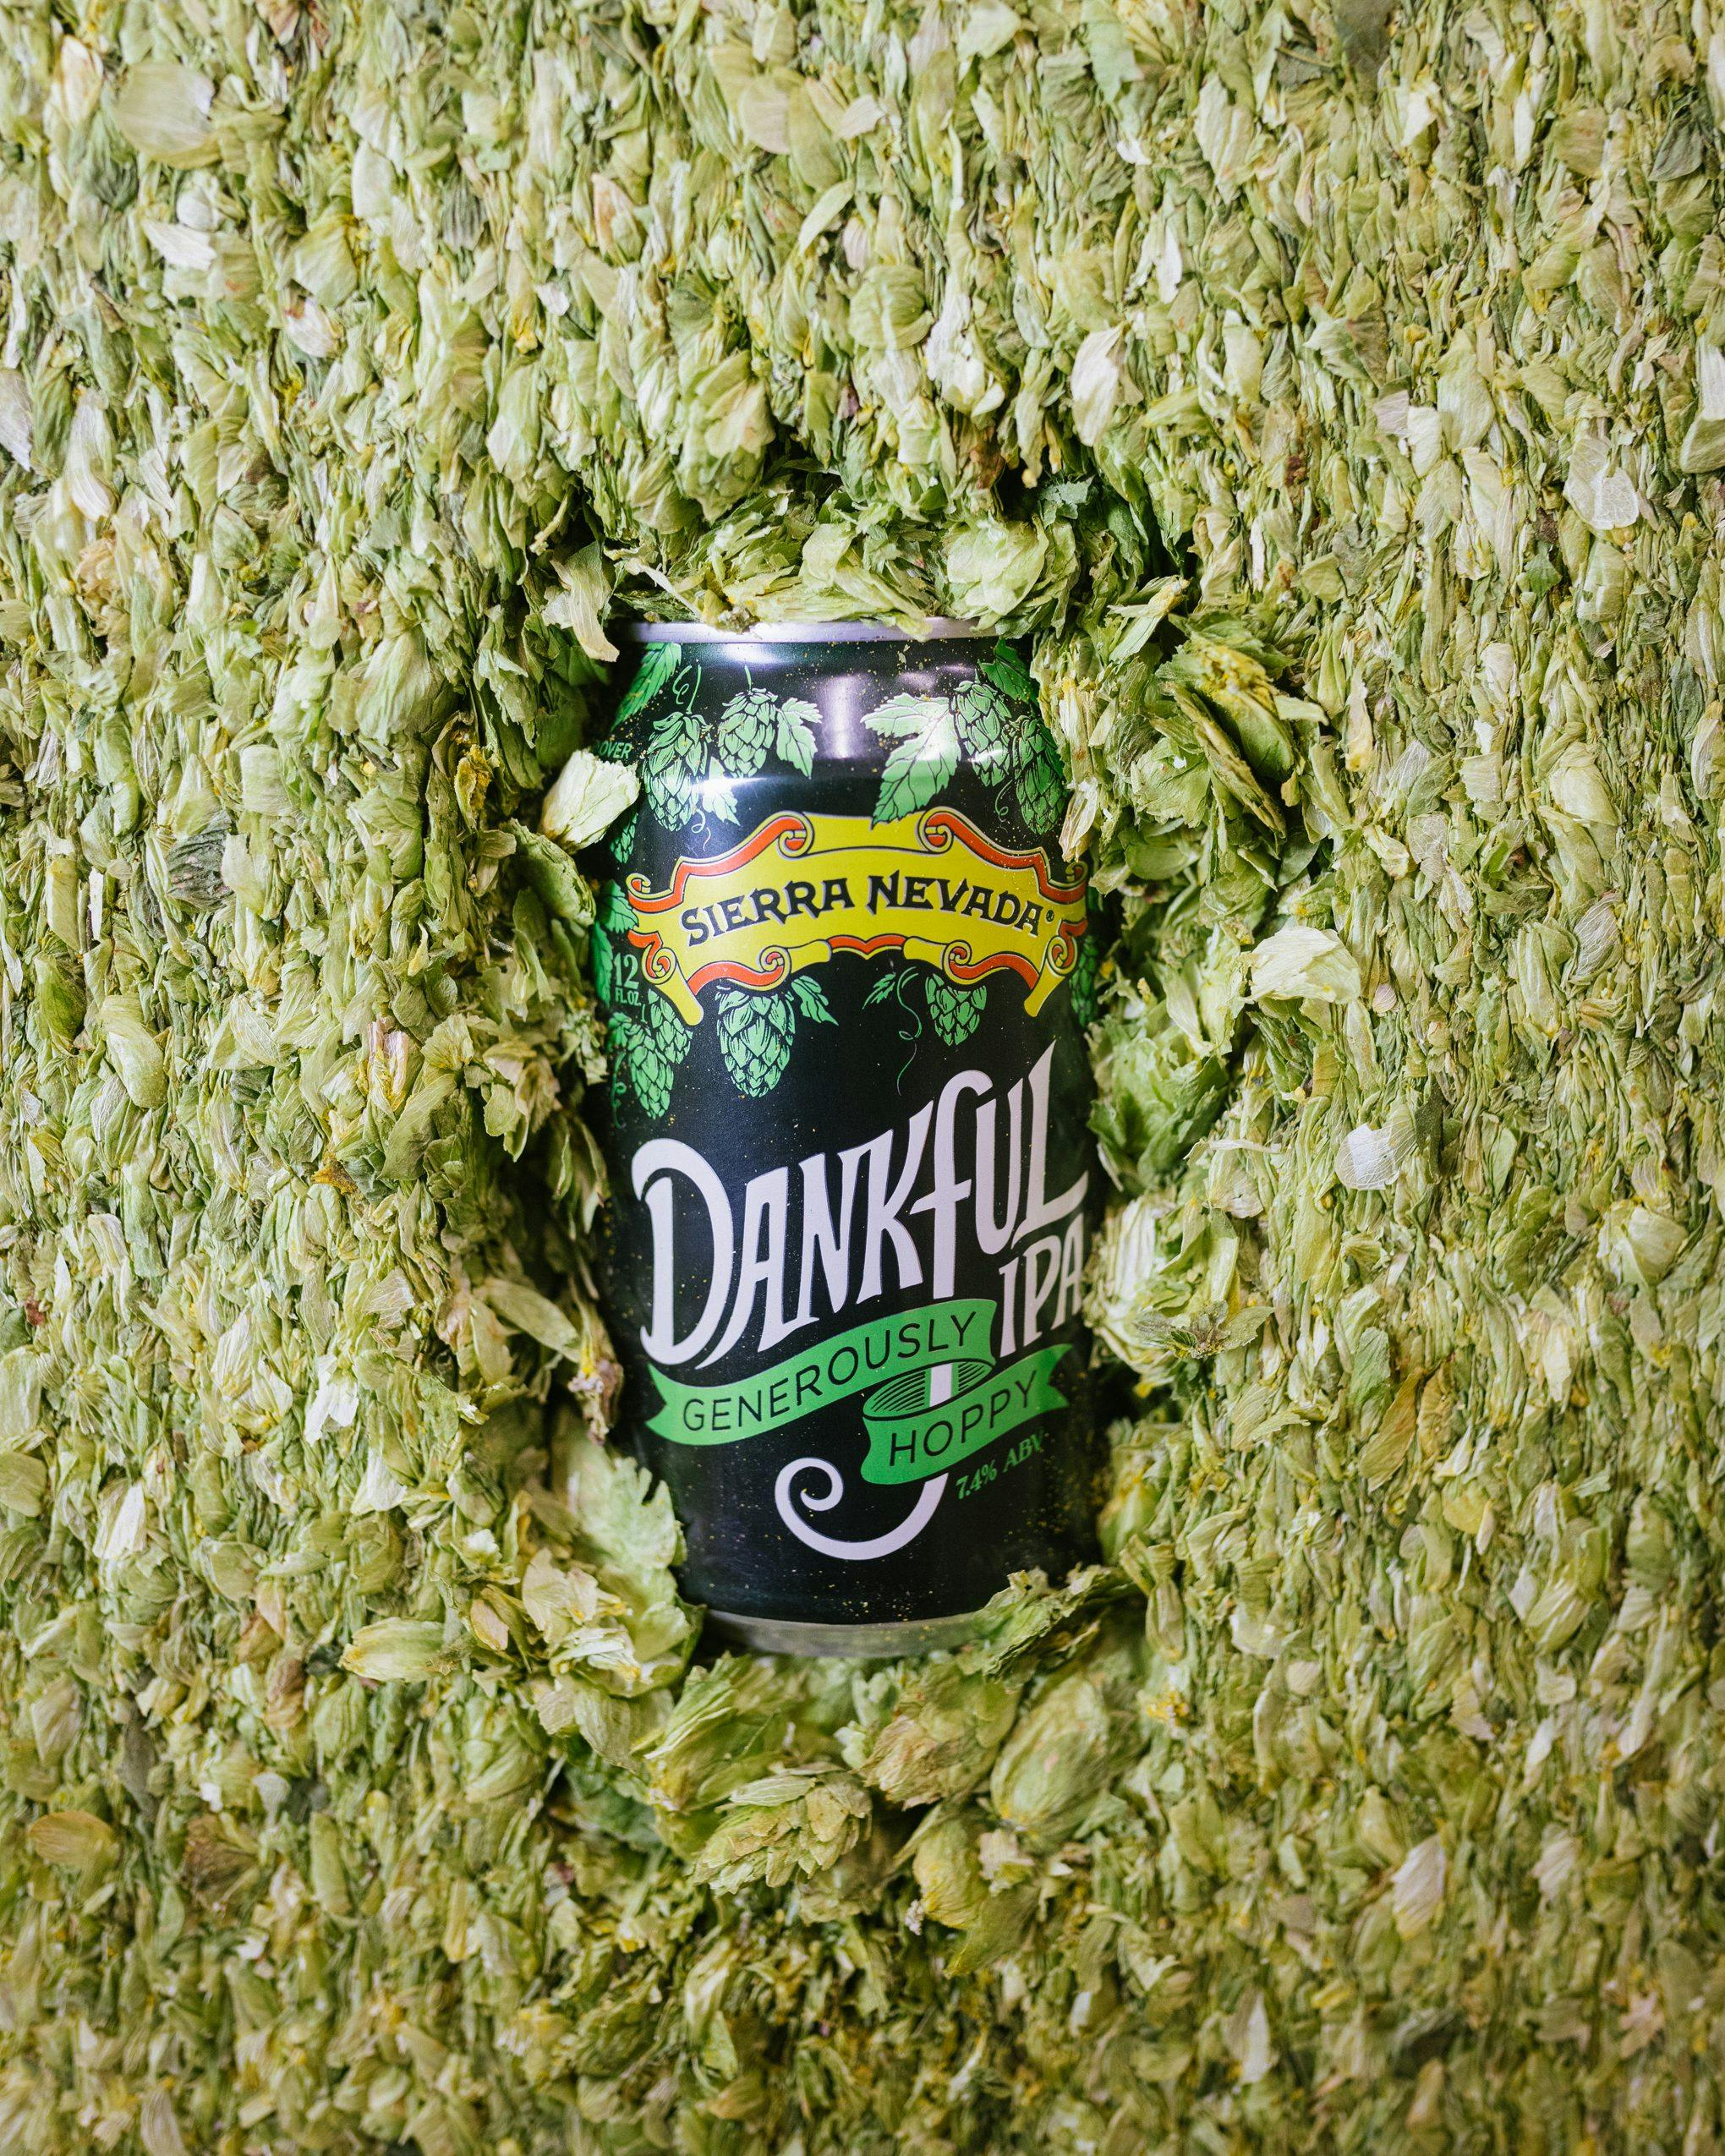 Dankful IPA beer can in hops